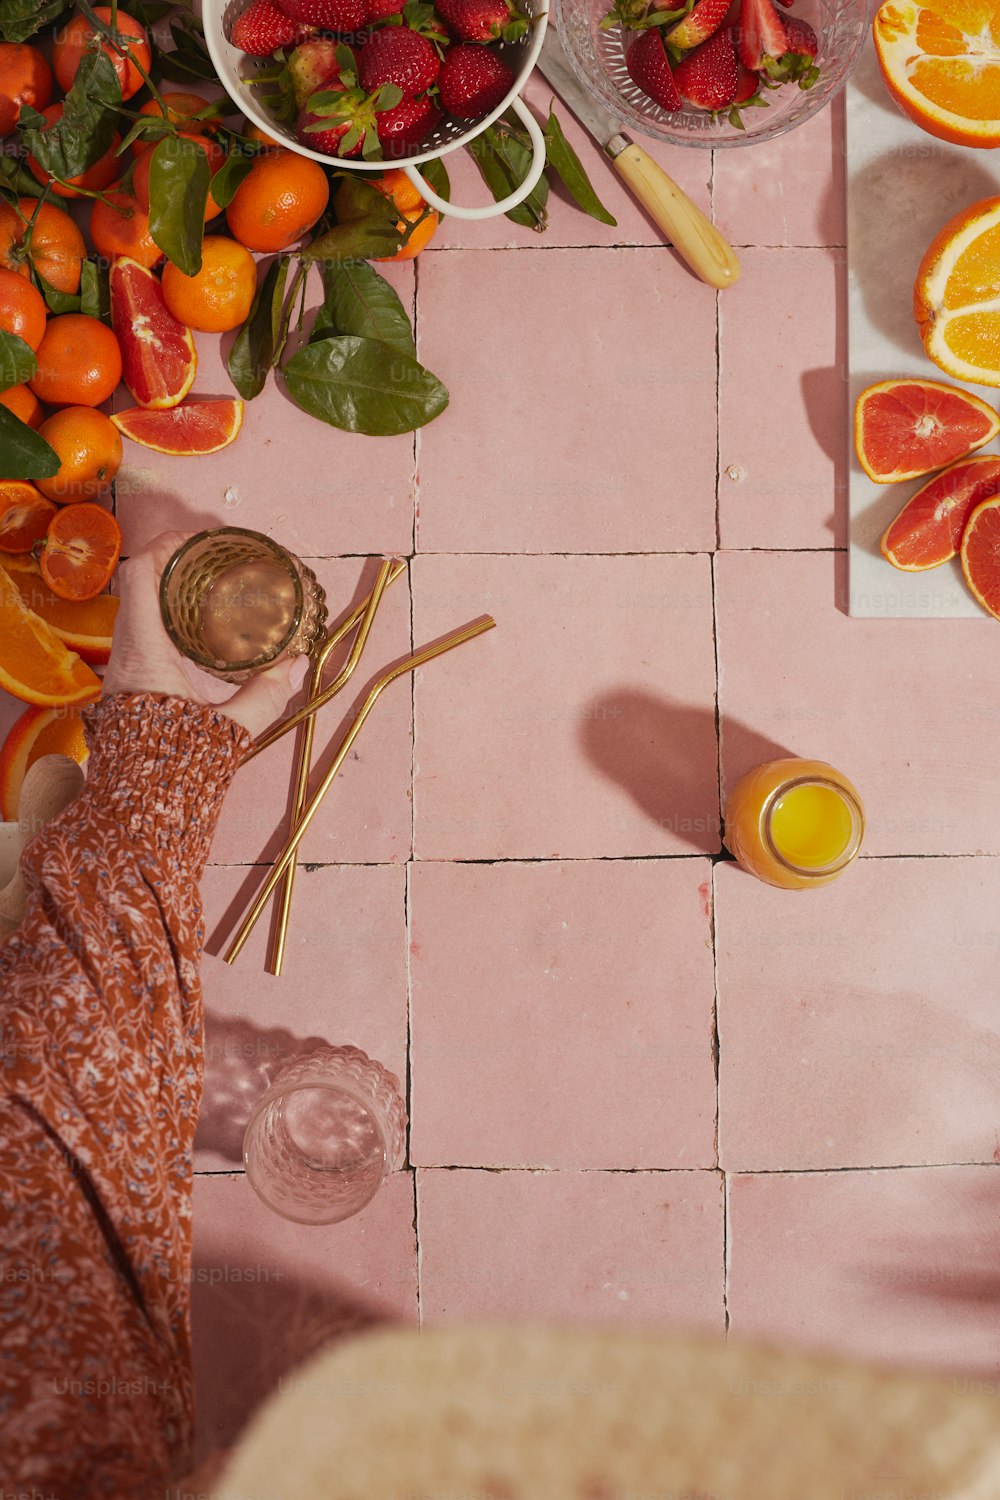 오렌지, 딸기 및 기타 과일이 있는 테이블